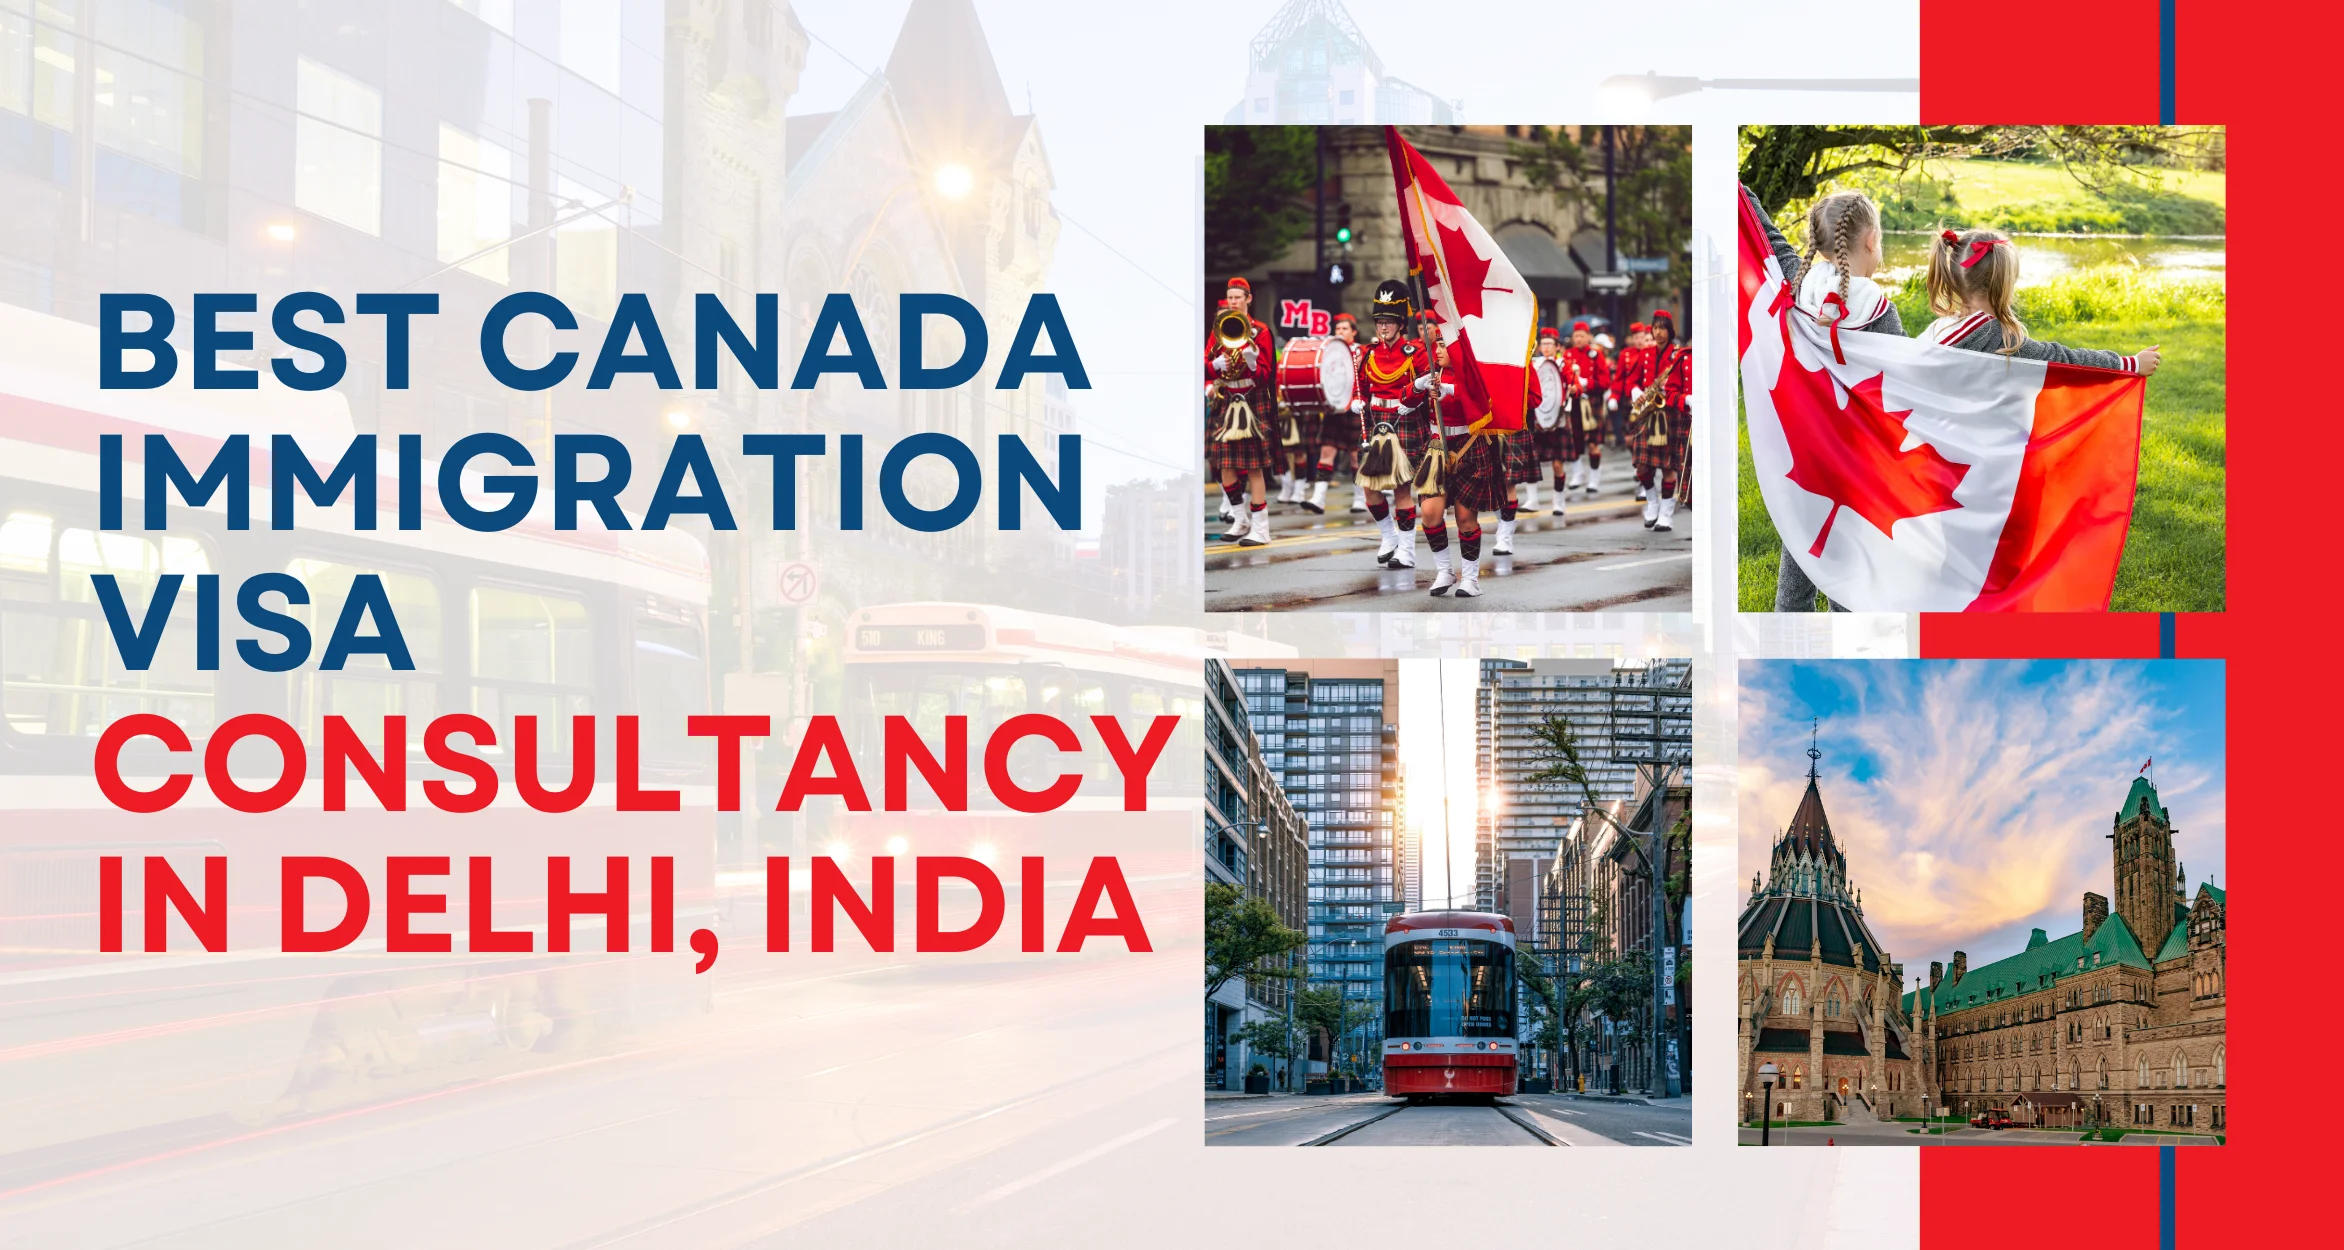 Best Canada Immigration Visa consultancy in Delhi, India